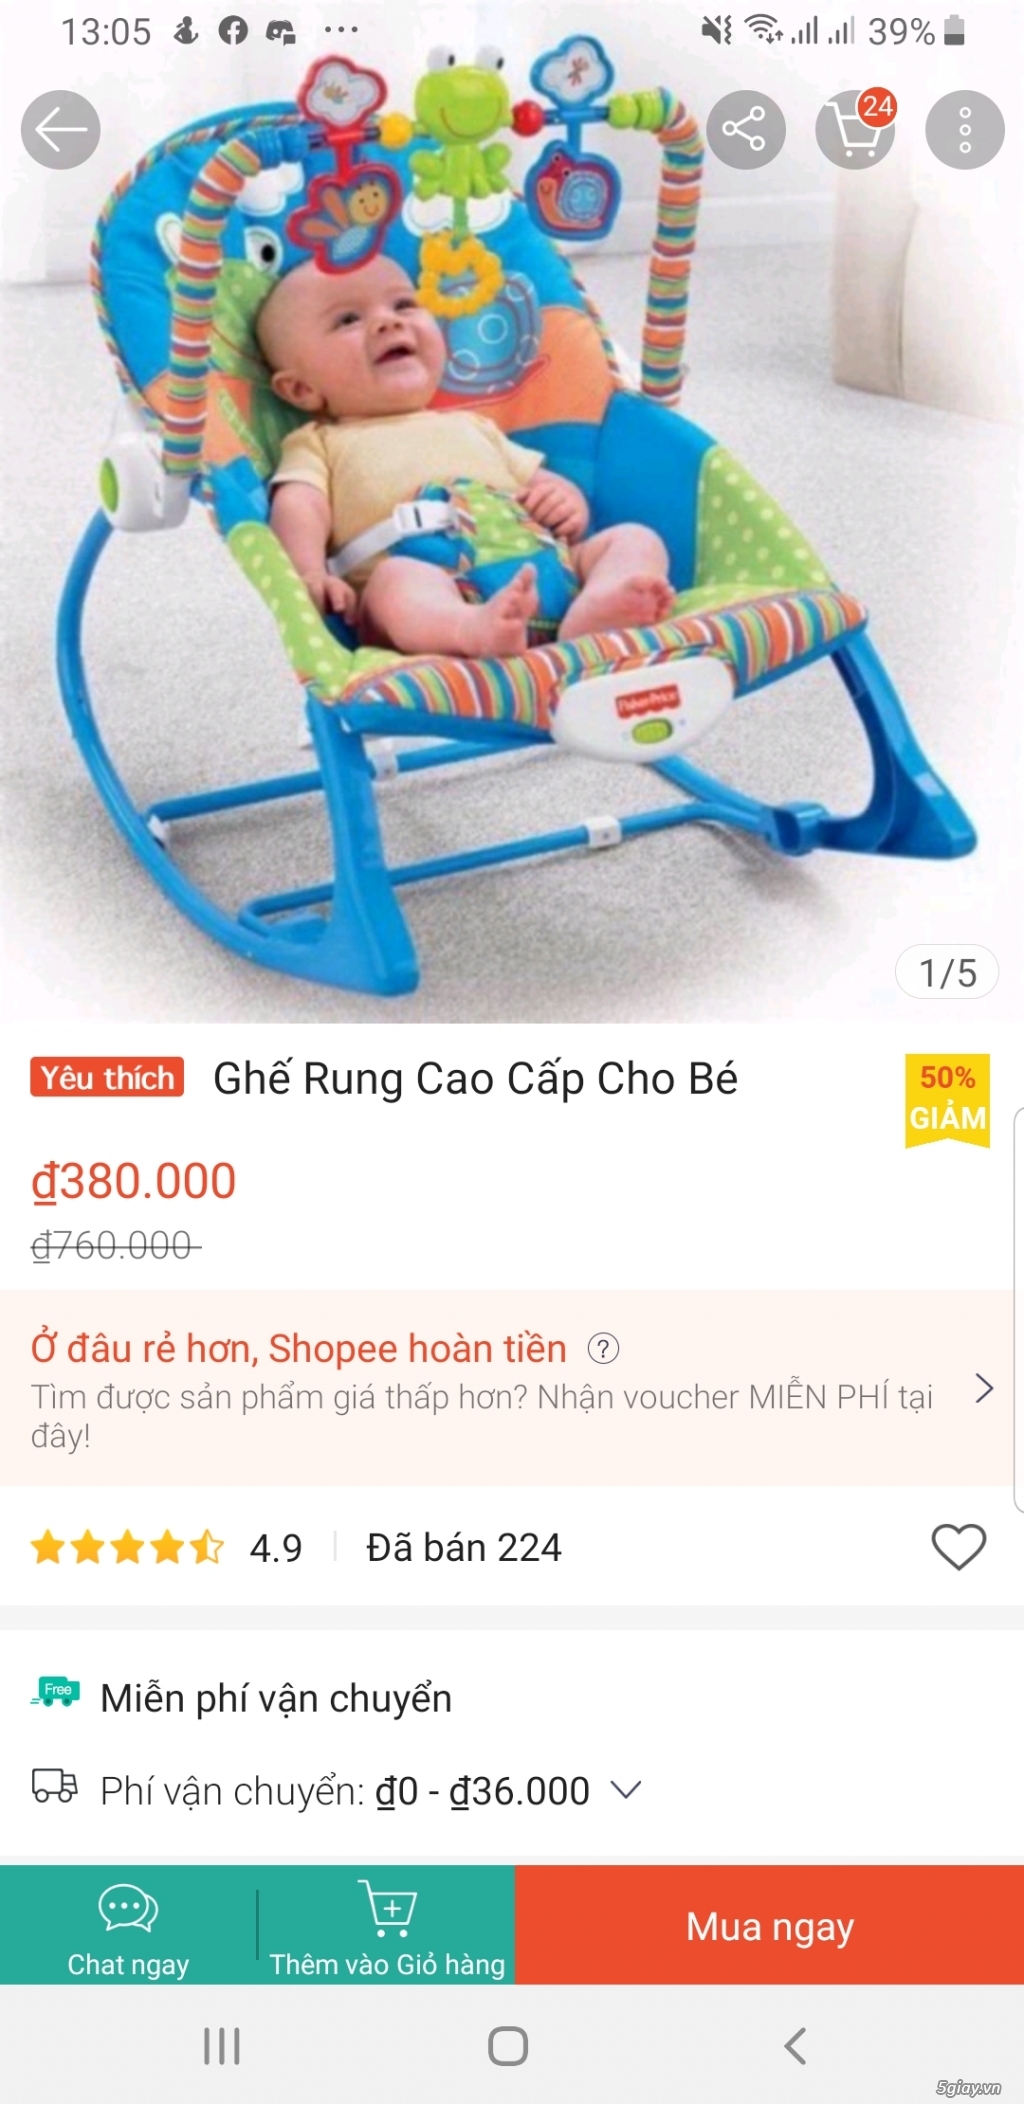 Cần bán ghế rung cao cấp cho bé giá rẻ!!